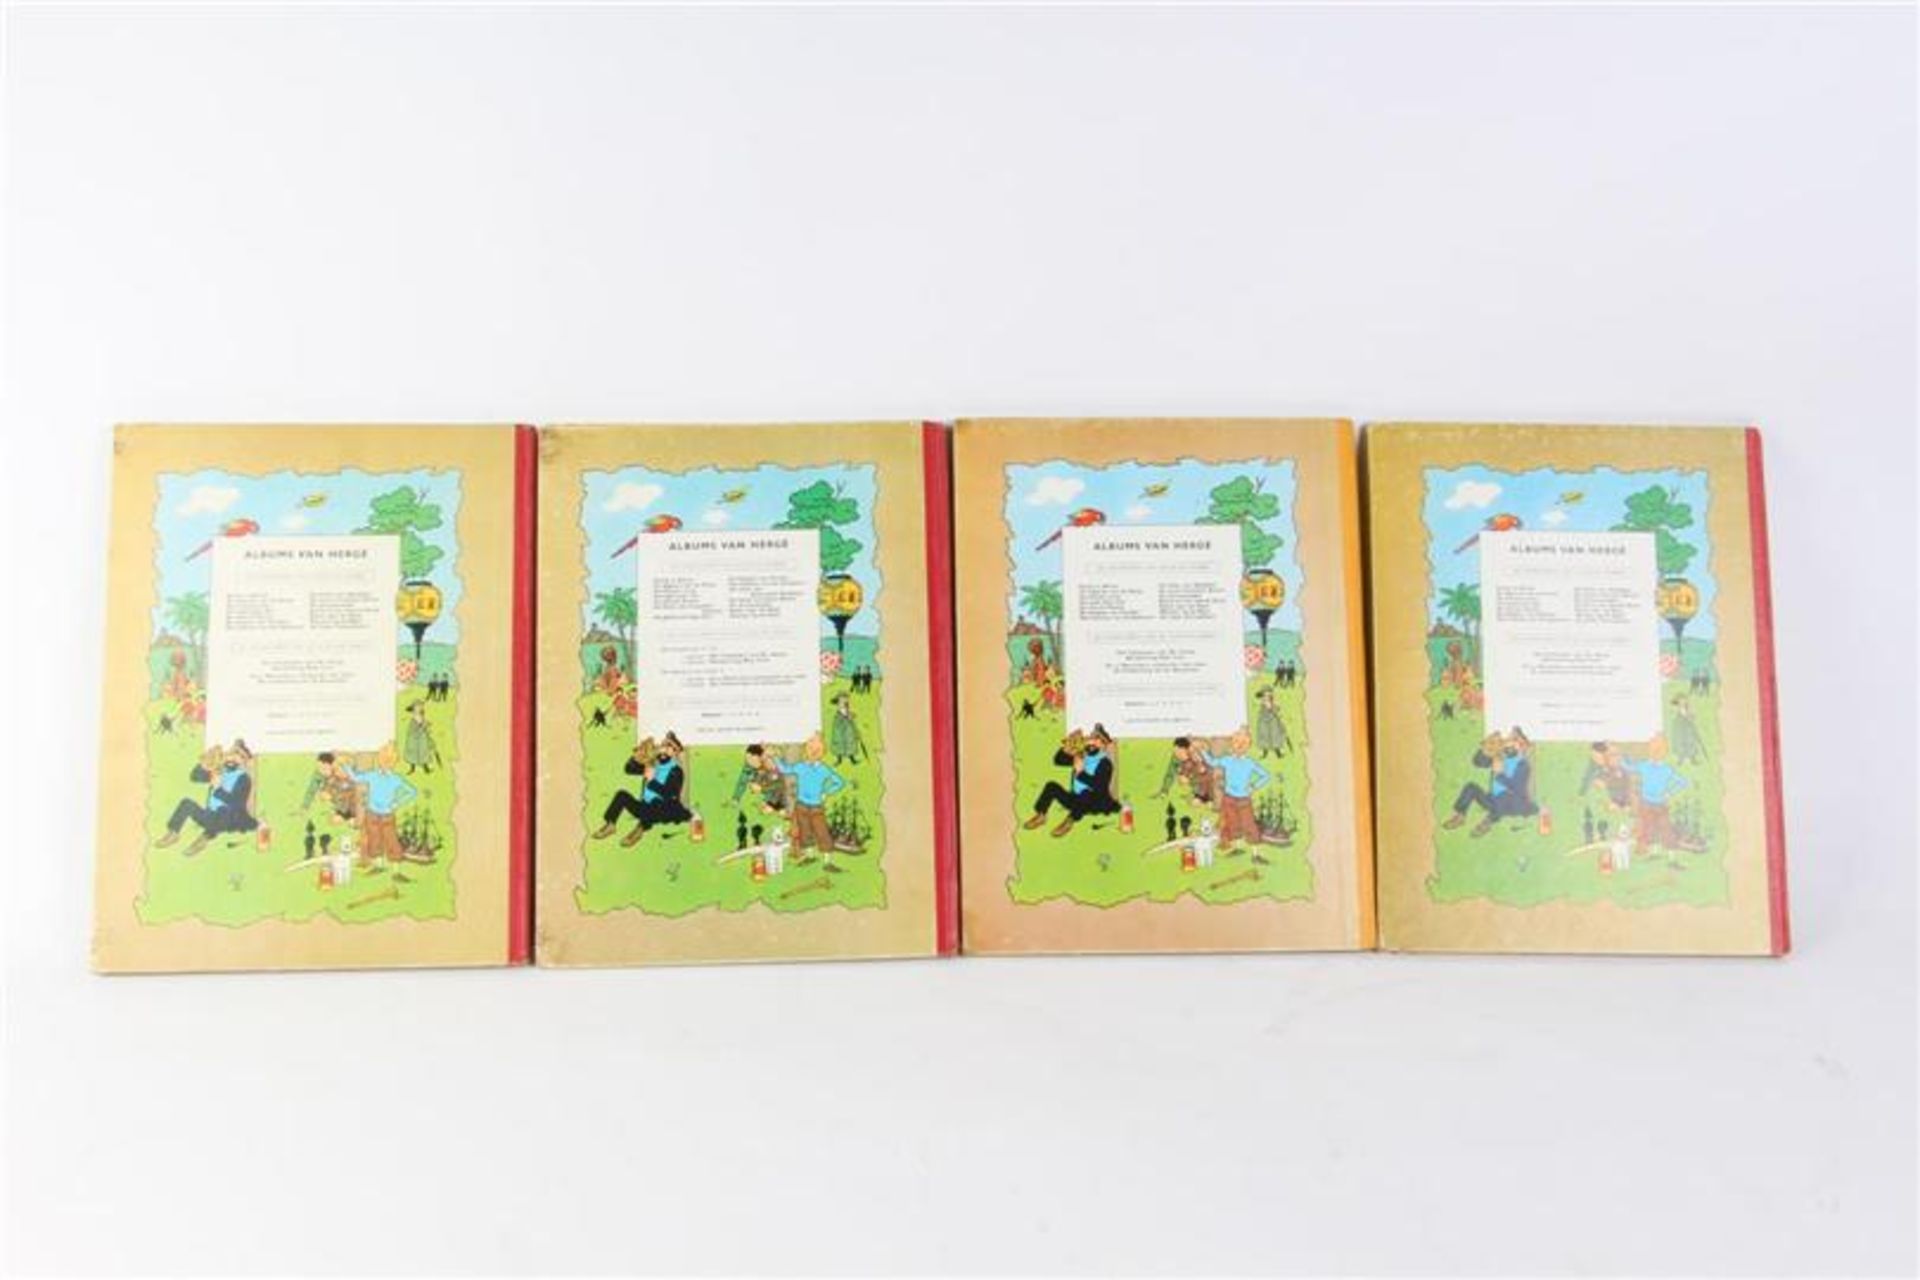 De avonturen van Kuifje, Hergé, uitgeverij Casterman, 7 hardcovers en drie softcovers. - Bild 11 aus 17